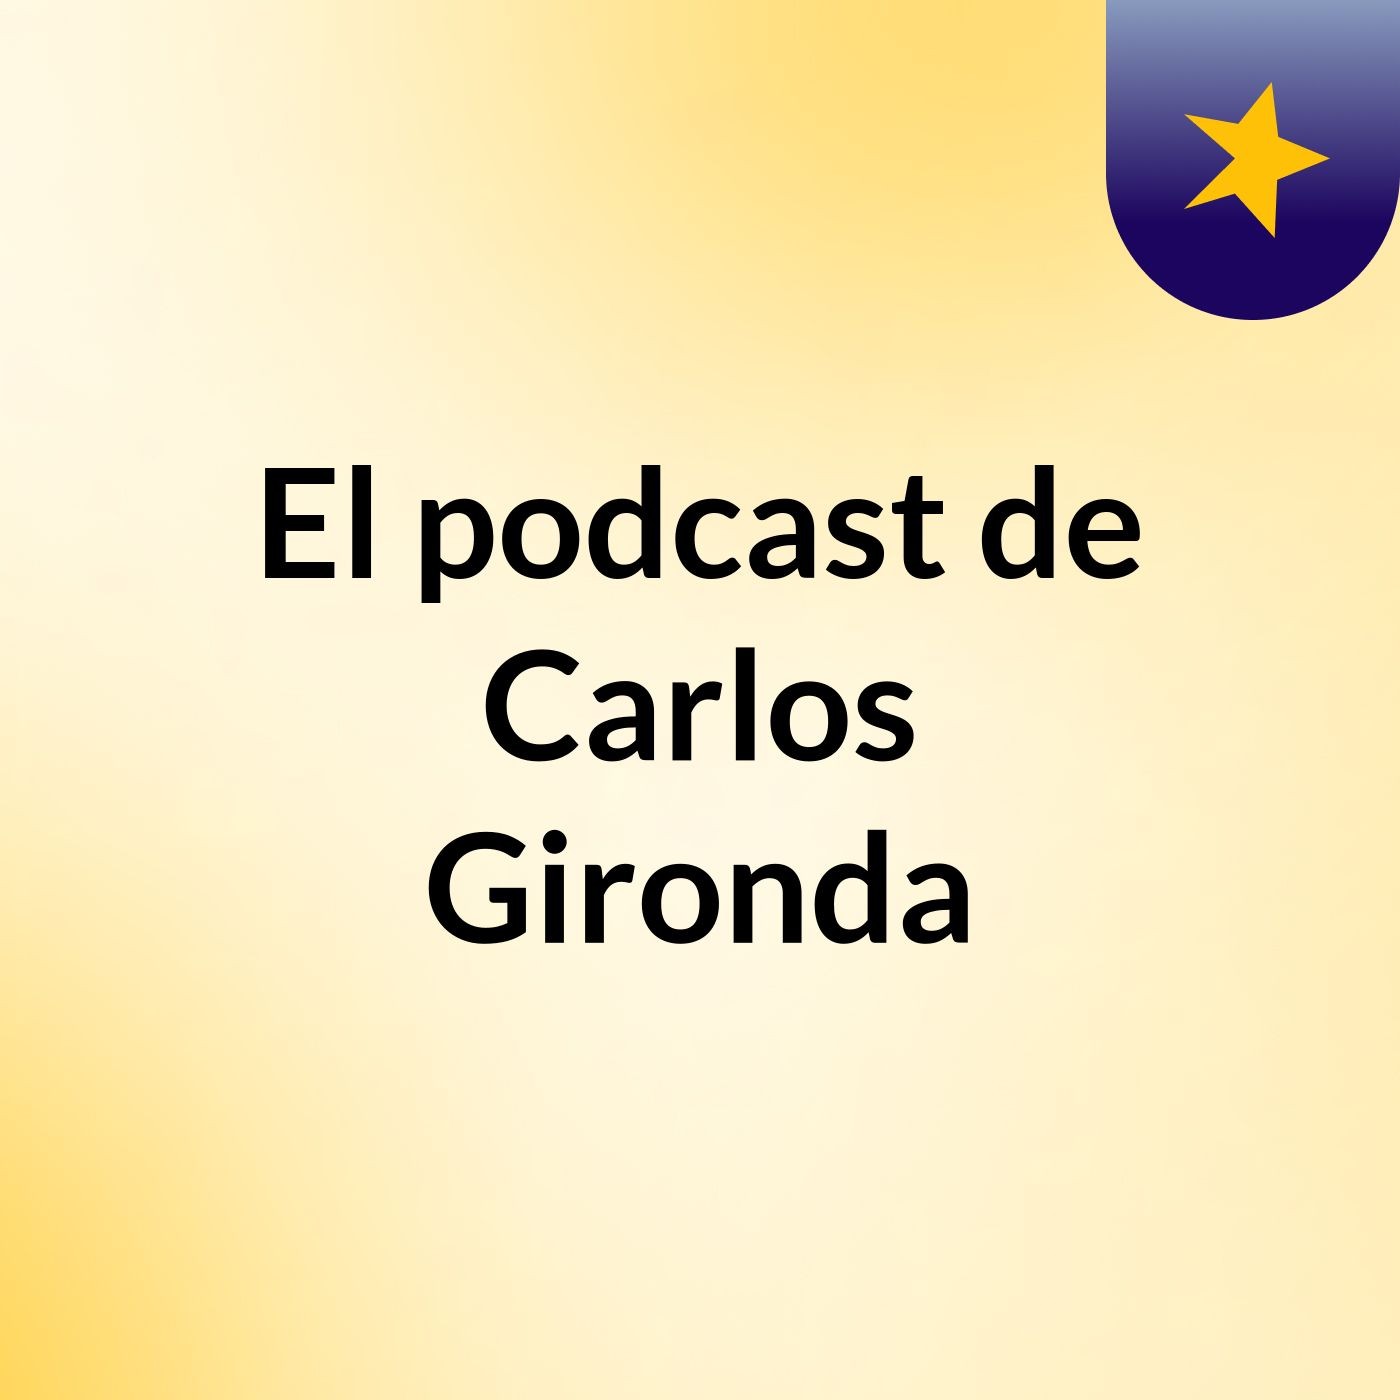 El podcast de Carlos Gironda